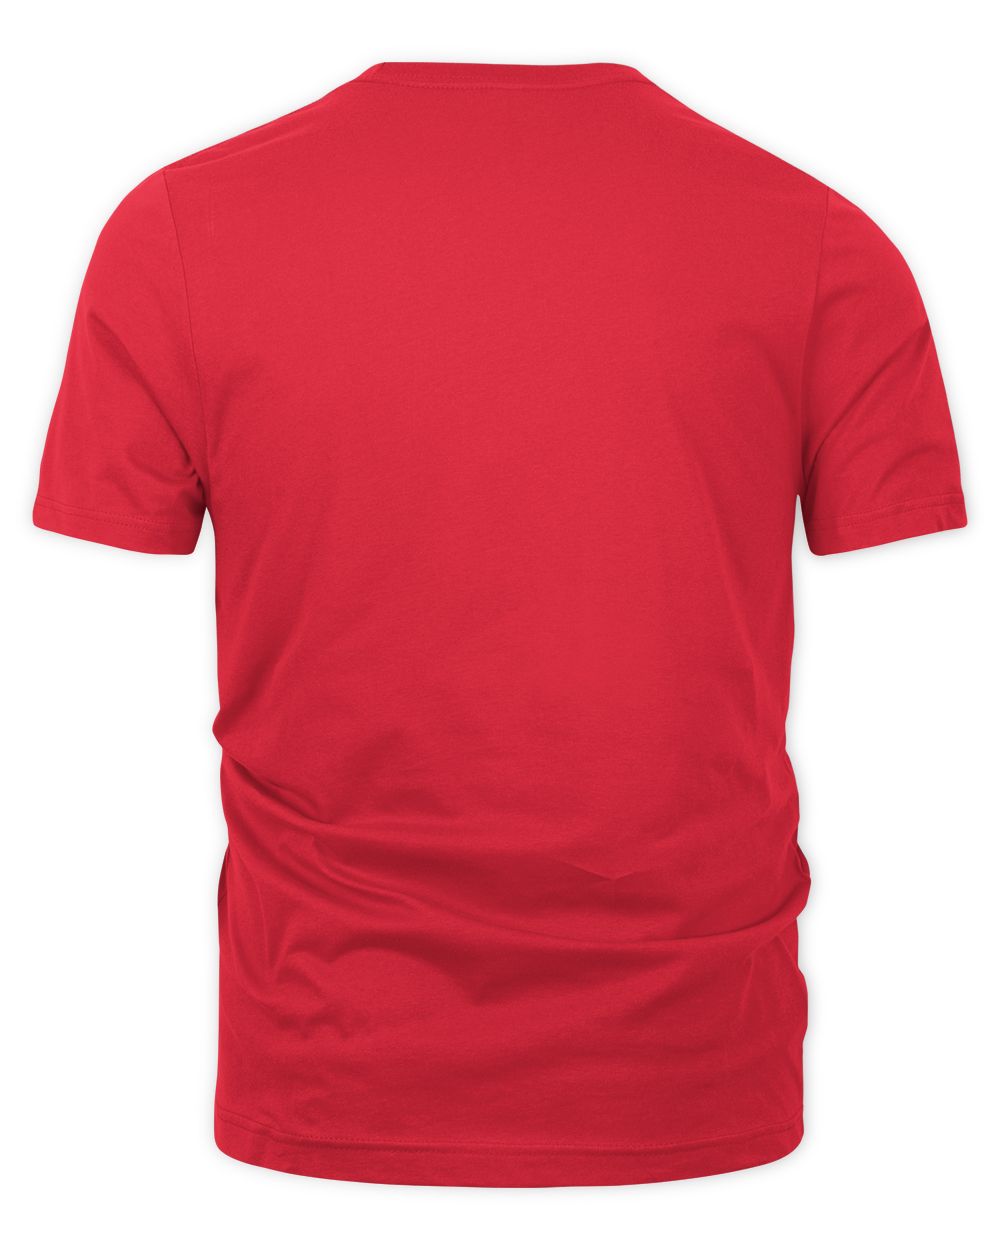 Golden Girls Merch Keep Calm and Eat Cheesecake Shirt Unisex Premium T-Shirt red 